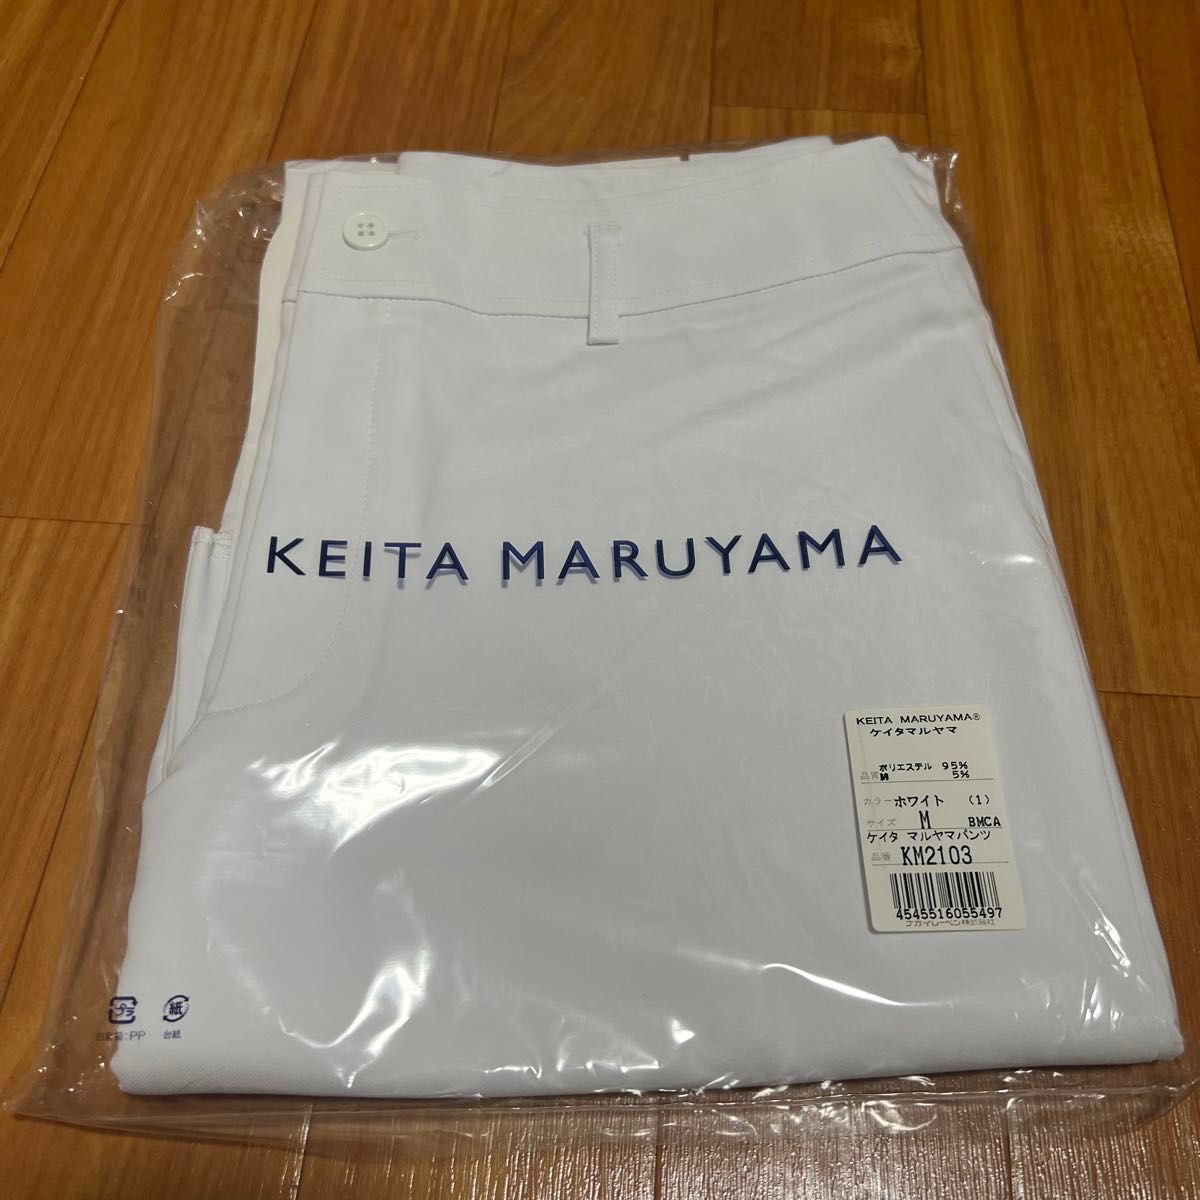 KEITA MARUYAMA ナガイレーベン ケイタマルヤマパンツ ホワイト M KM2103 (61-0772-23)